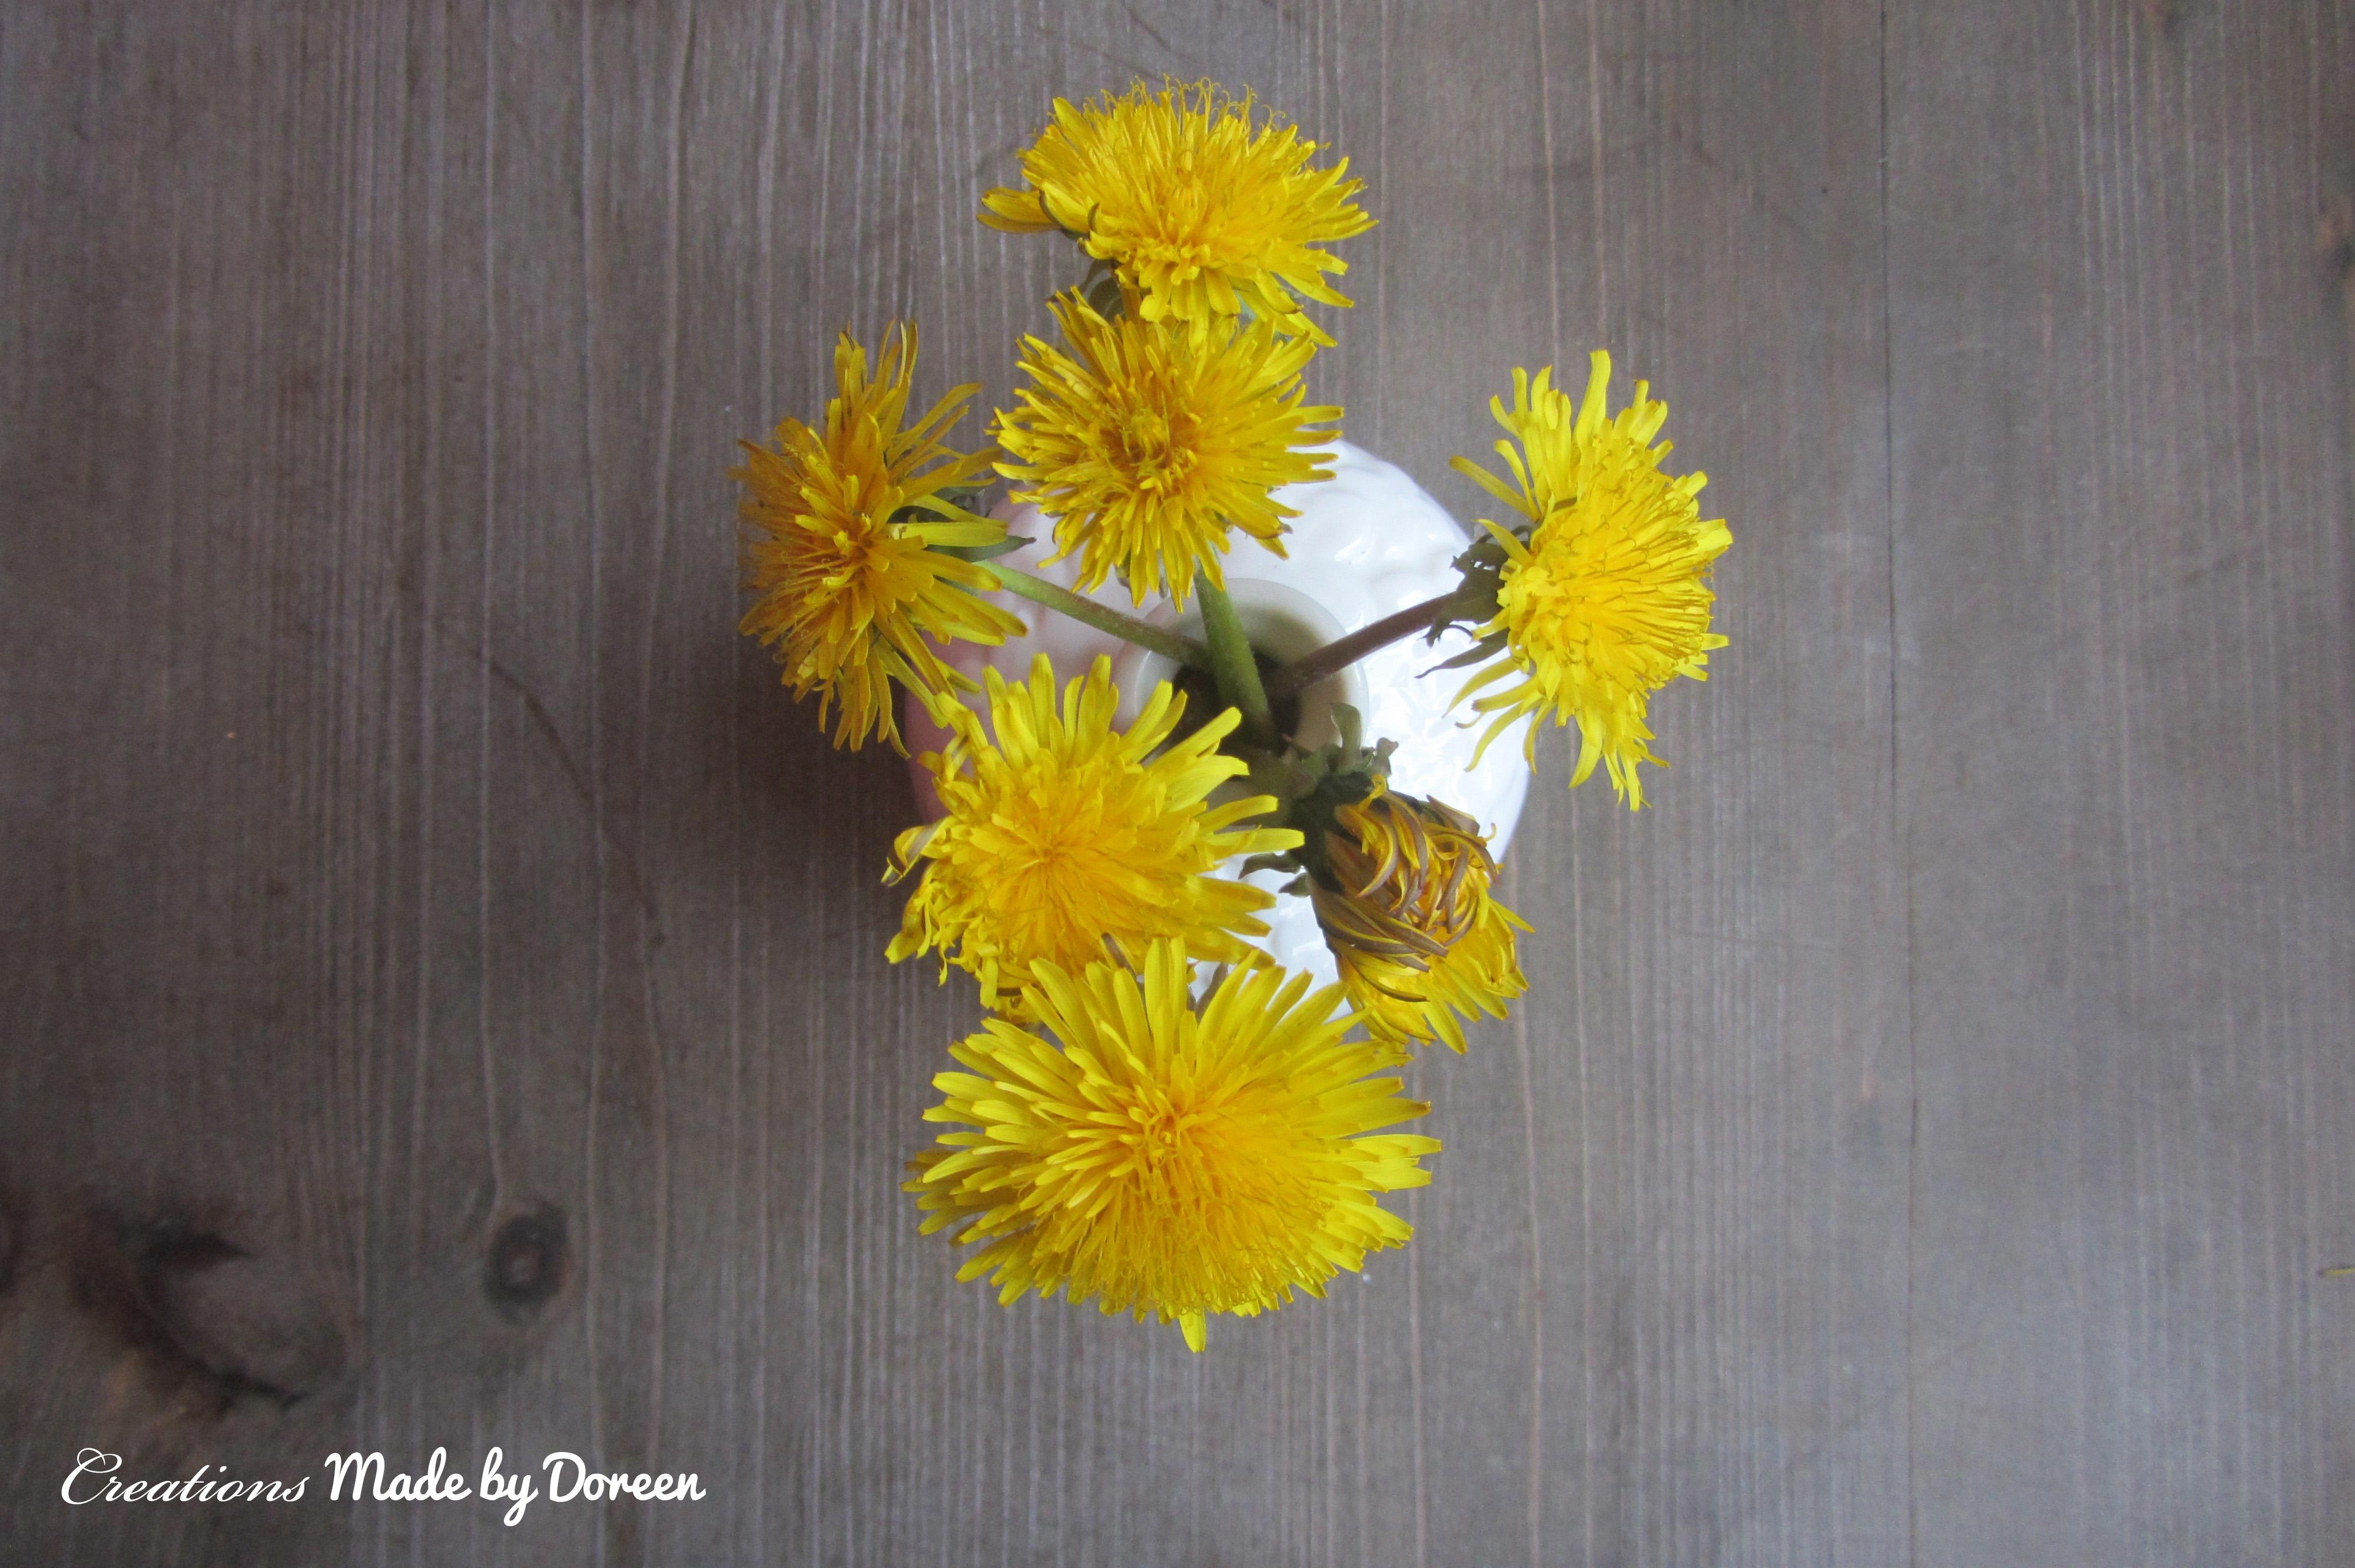 #Löwenzahn vom April - Diese Blume verzaubert uns jedes Jahr!